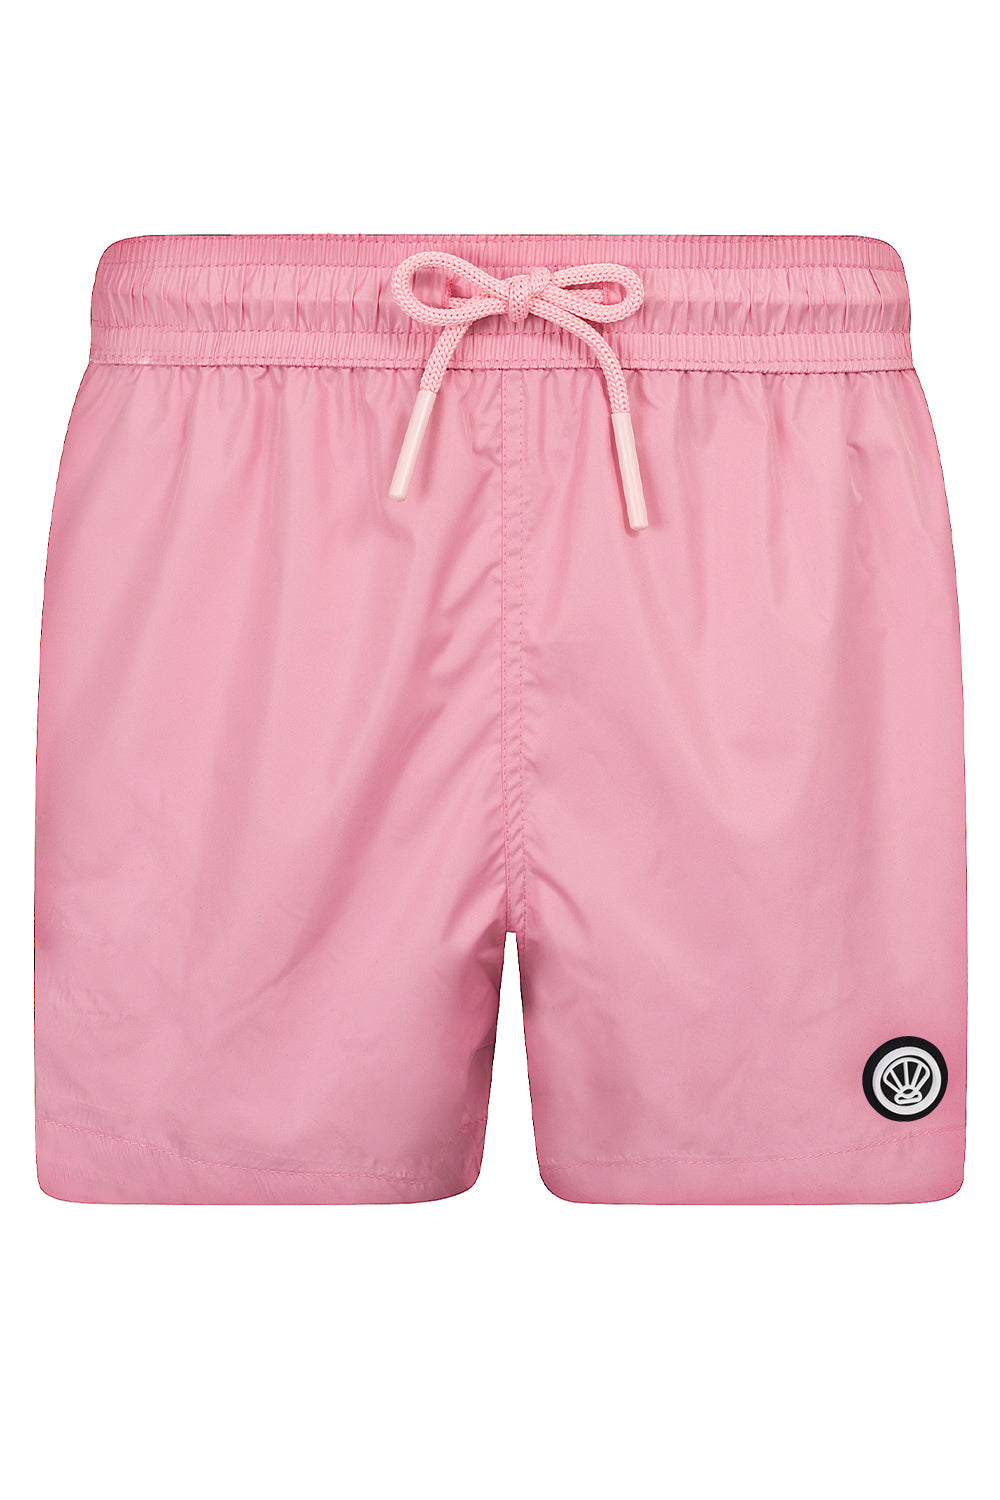 Basic Pink Boxers